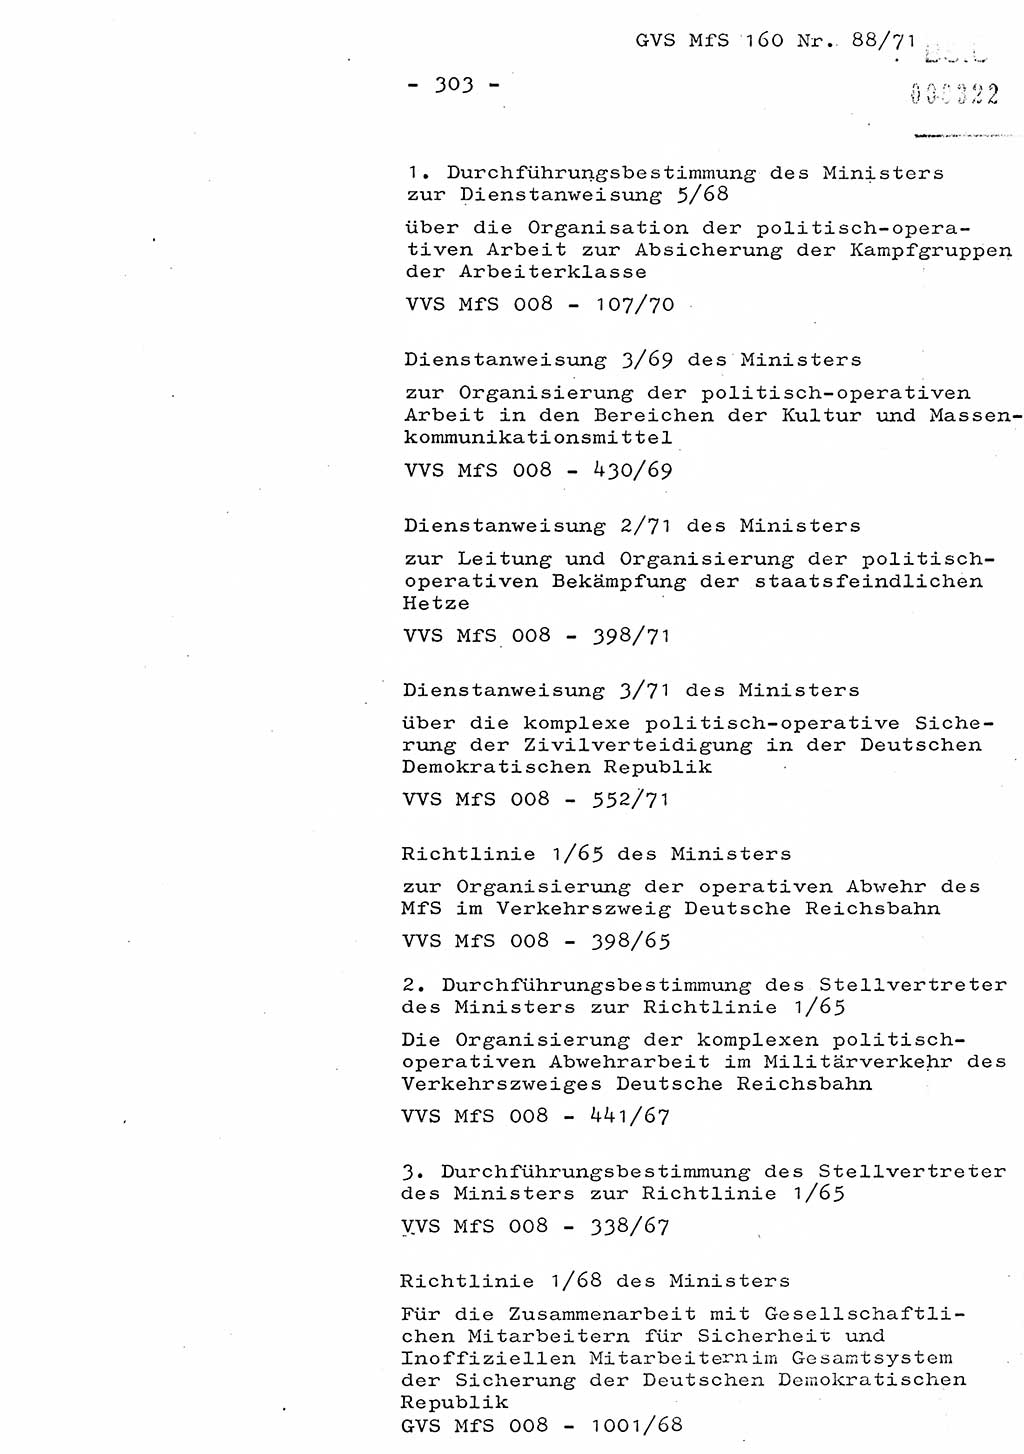 Dissertation Oberstleutnant Josef Schwarz (BV Schwerin), Major Fritz Amm (JHS), Hauptmann Peter Gräßler (JHS), Ministerium für Staatssicherheit (MfS) [Deutsche Demokratische Republik (DDR)], Juristische Hochschule (JHS), Geheime Verschlußsache (GVS) 160-88/71, Potsdam 1972, Seite 303 (Diss. MfS DDR JHS GVS 160-88/71 1972, S. 303)